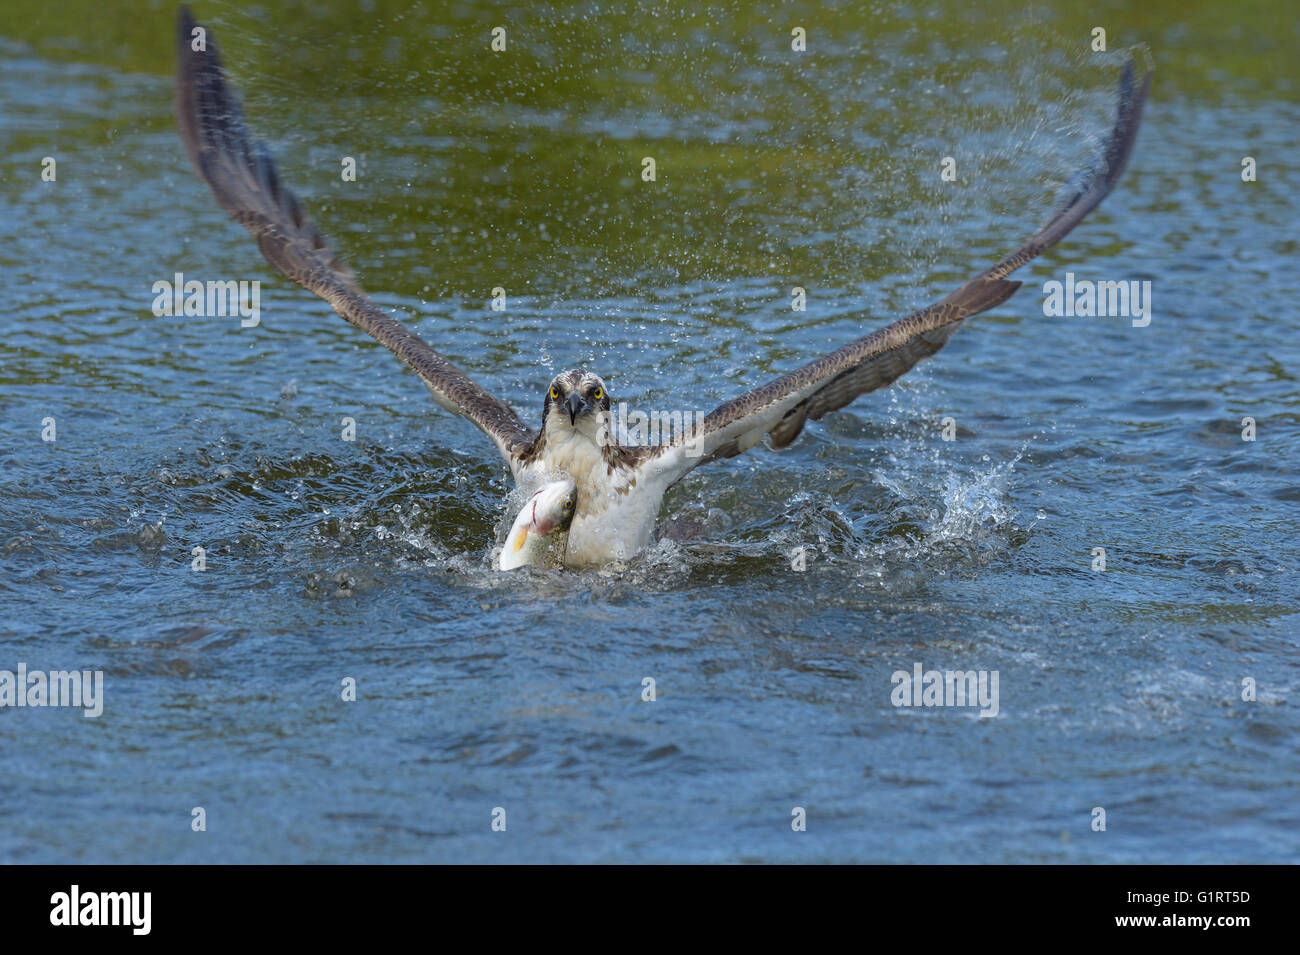 El águila pescadora (Pandion haliaetus), comienza después de la caza del lago el agua, pescado fresco, trucha arco iris (Oncorhynchus mykiss), Tampere Foto de stock